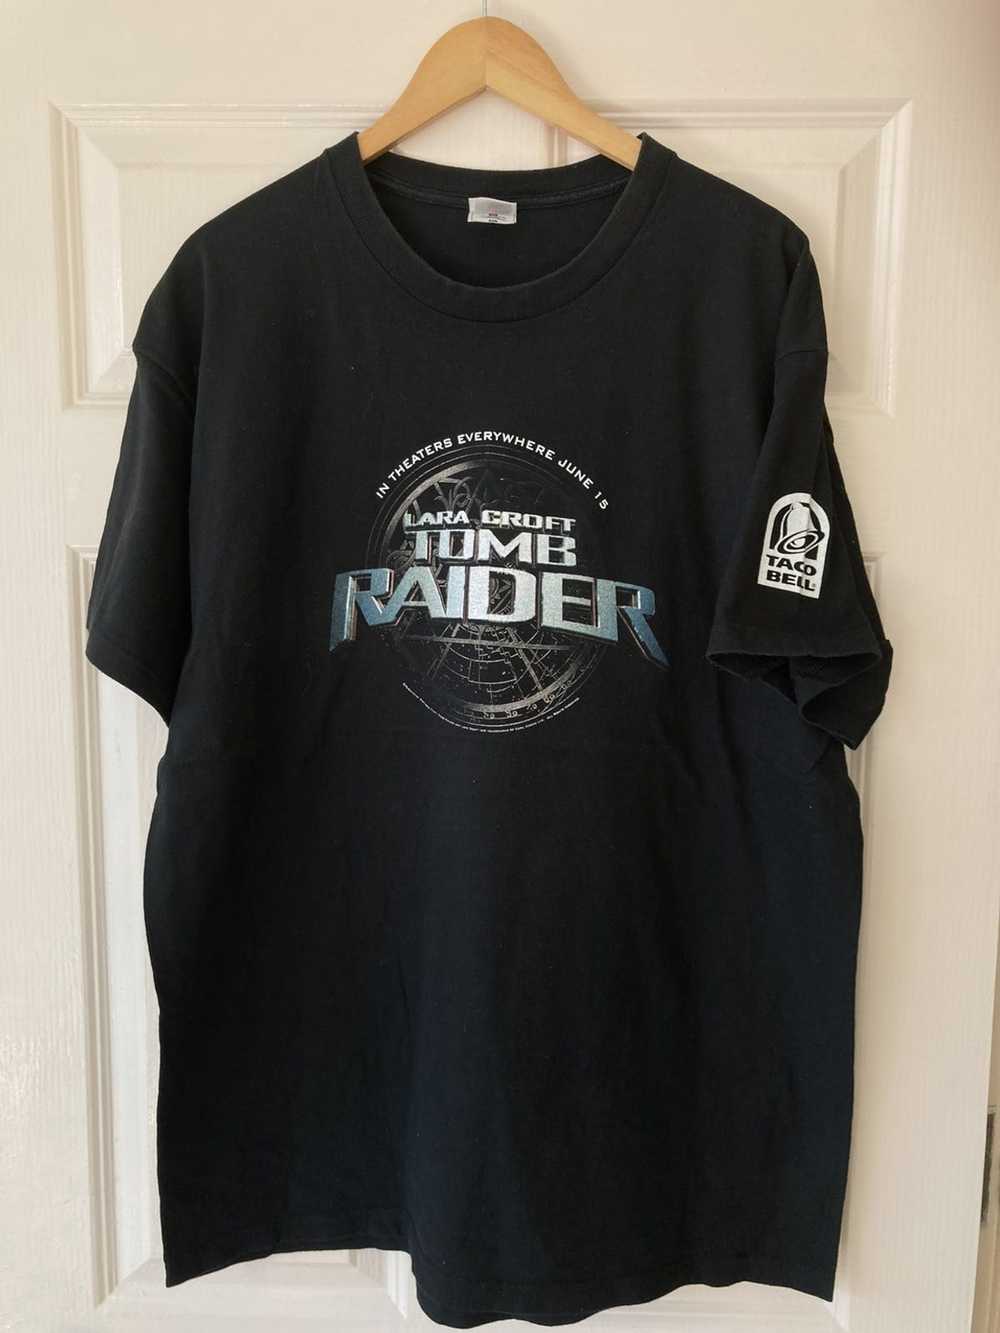 Vintage Vintage Tomb Raider T-shirt - image 1